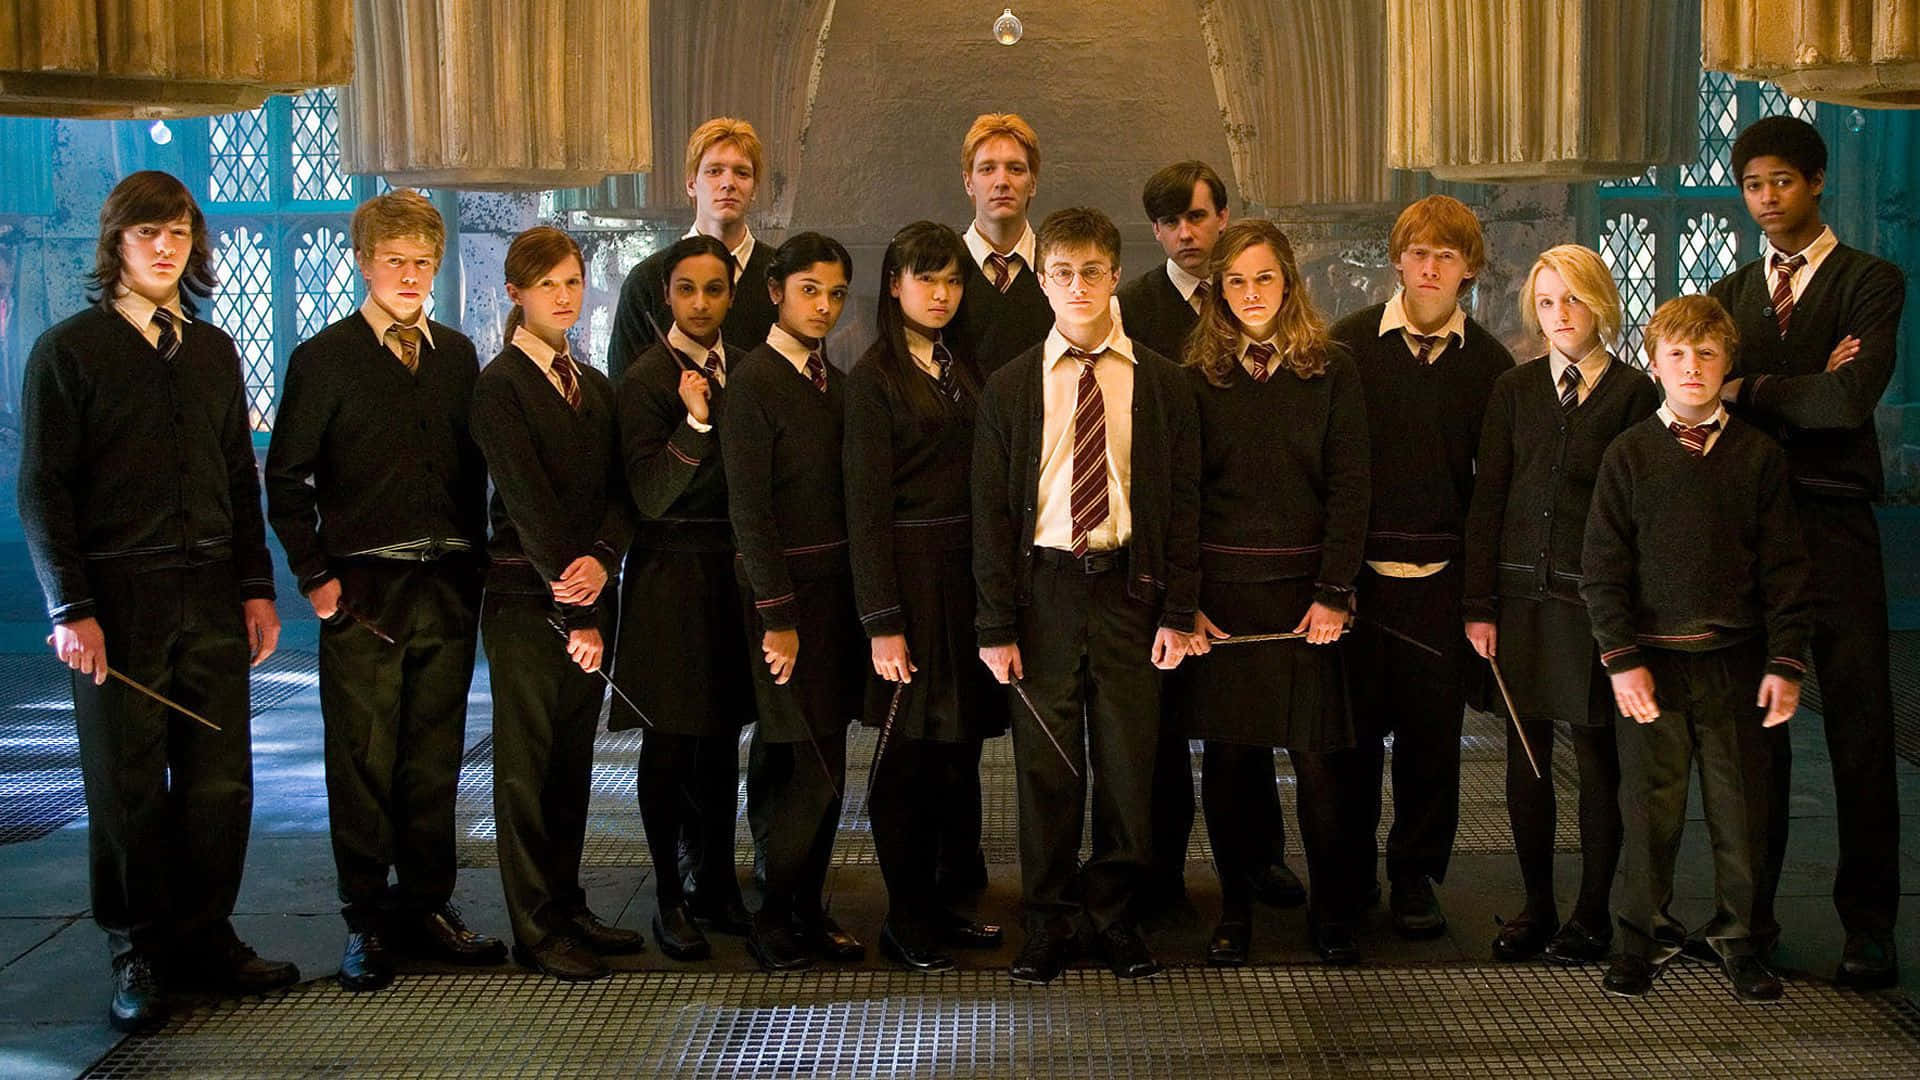 Miembrosdel Ejército De Dumbledore En La Escuela De Magia Y Hechicería De Hogwarts. Fondo de pantalla